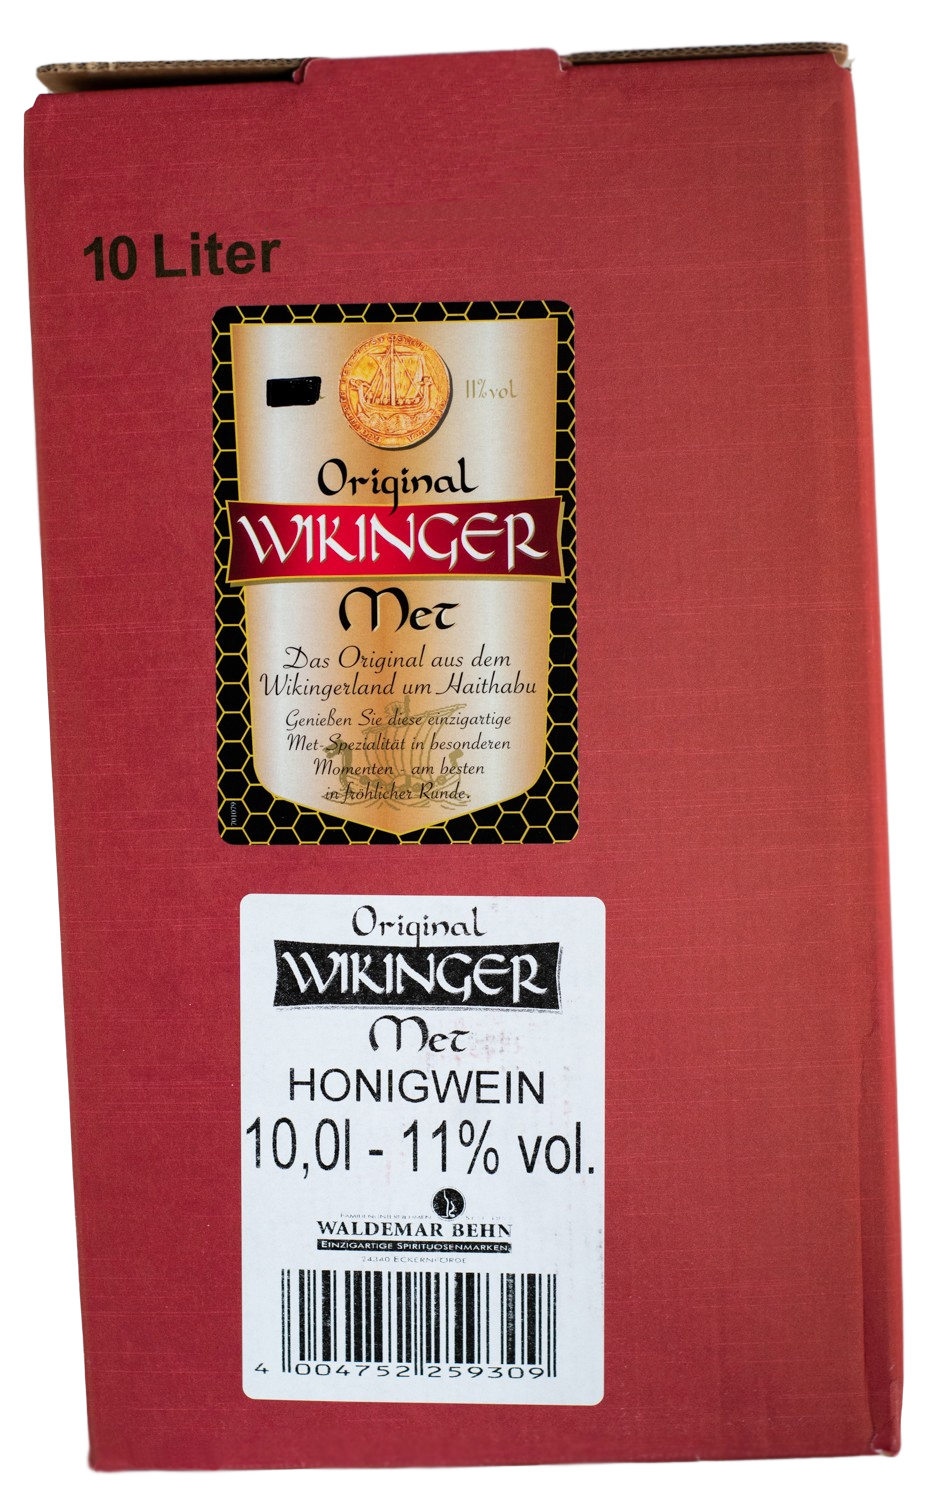 Original Wikinger Met 10 Liter kaufen günstig (10L)